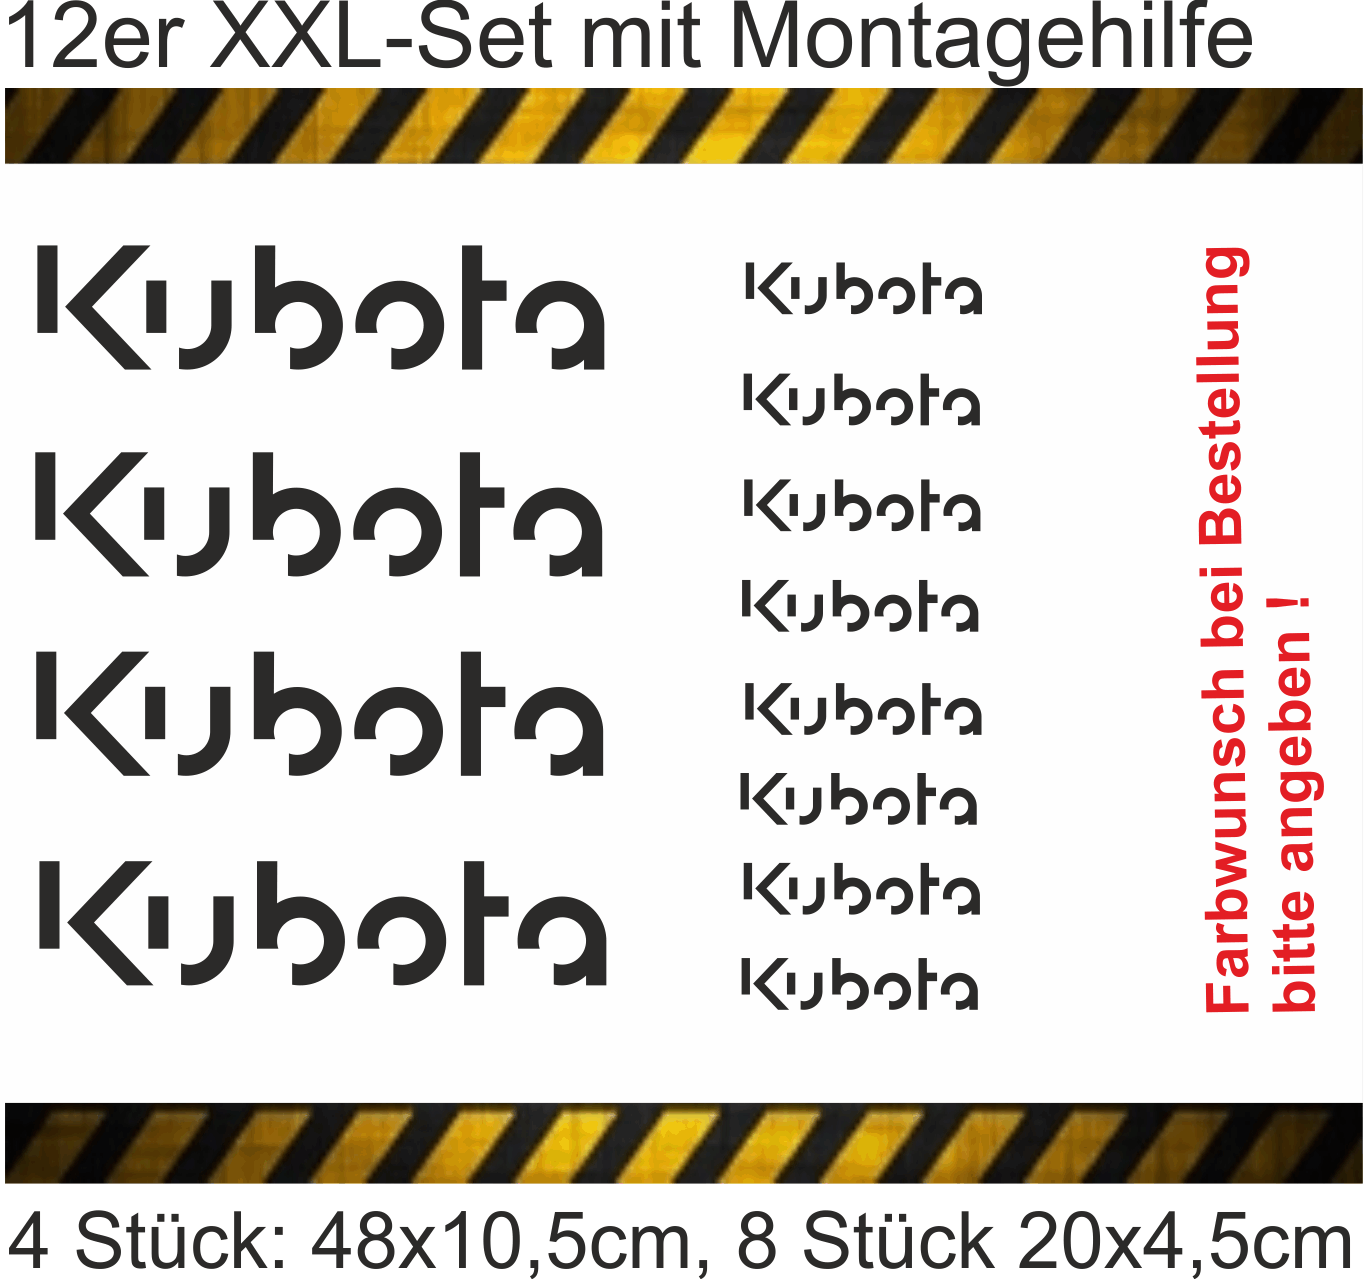 Kubota - 12er Set